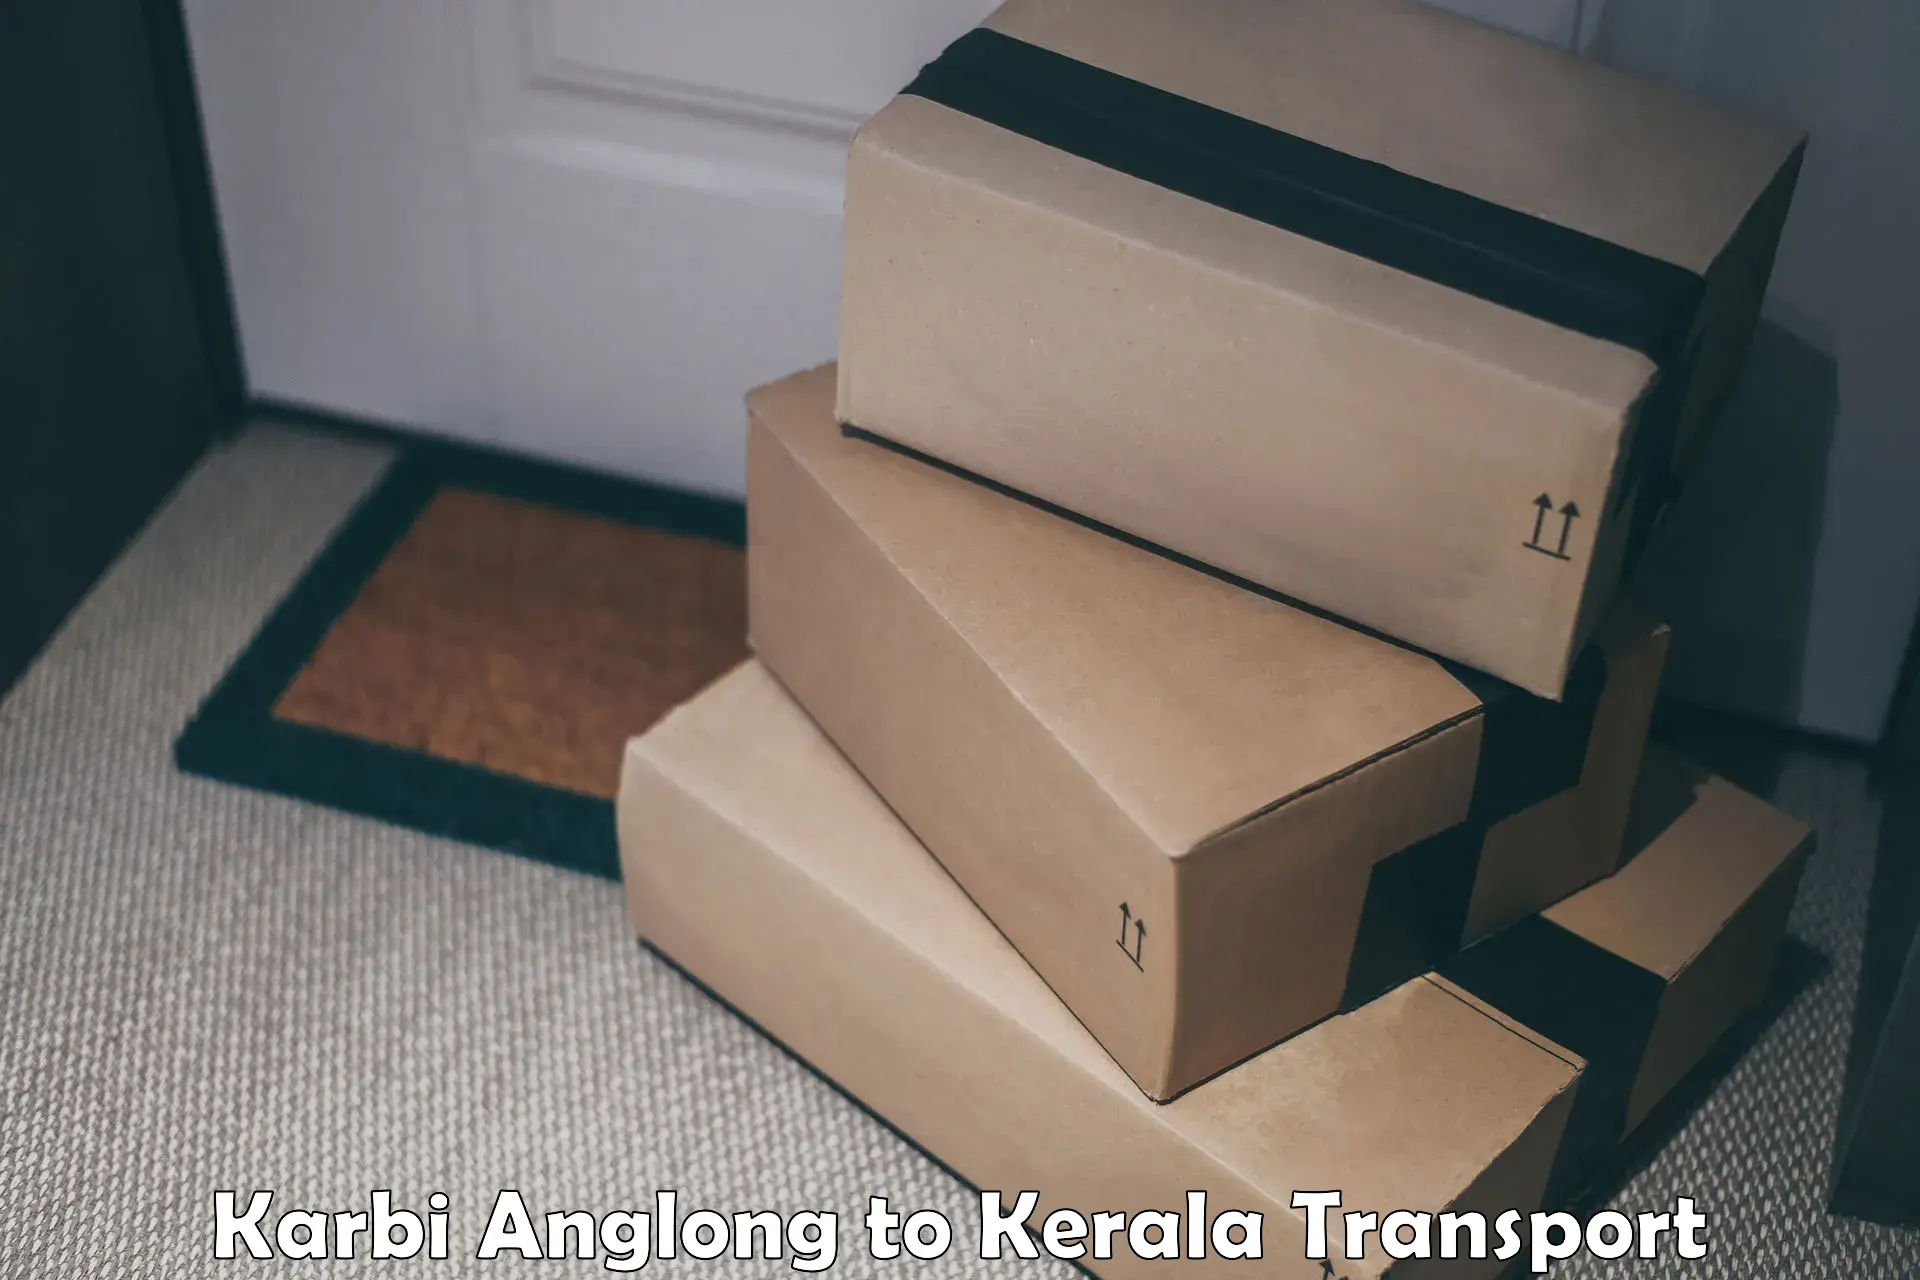 Shipping services Karbi Anglong to Munnar